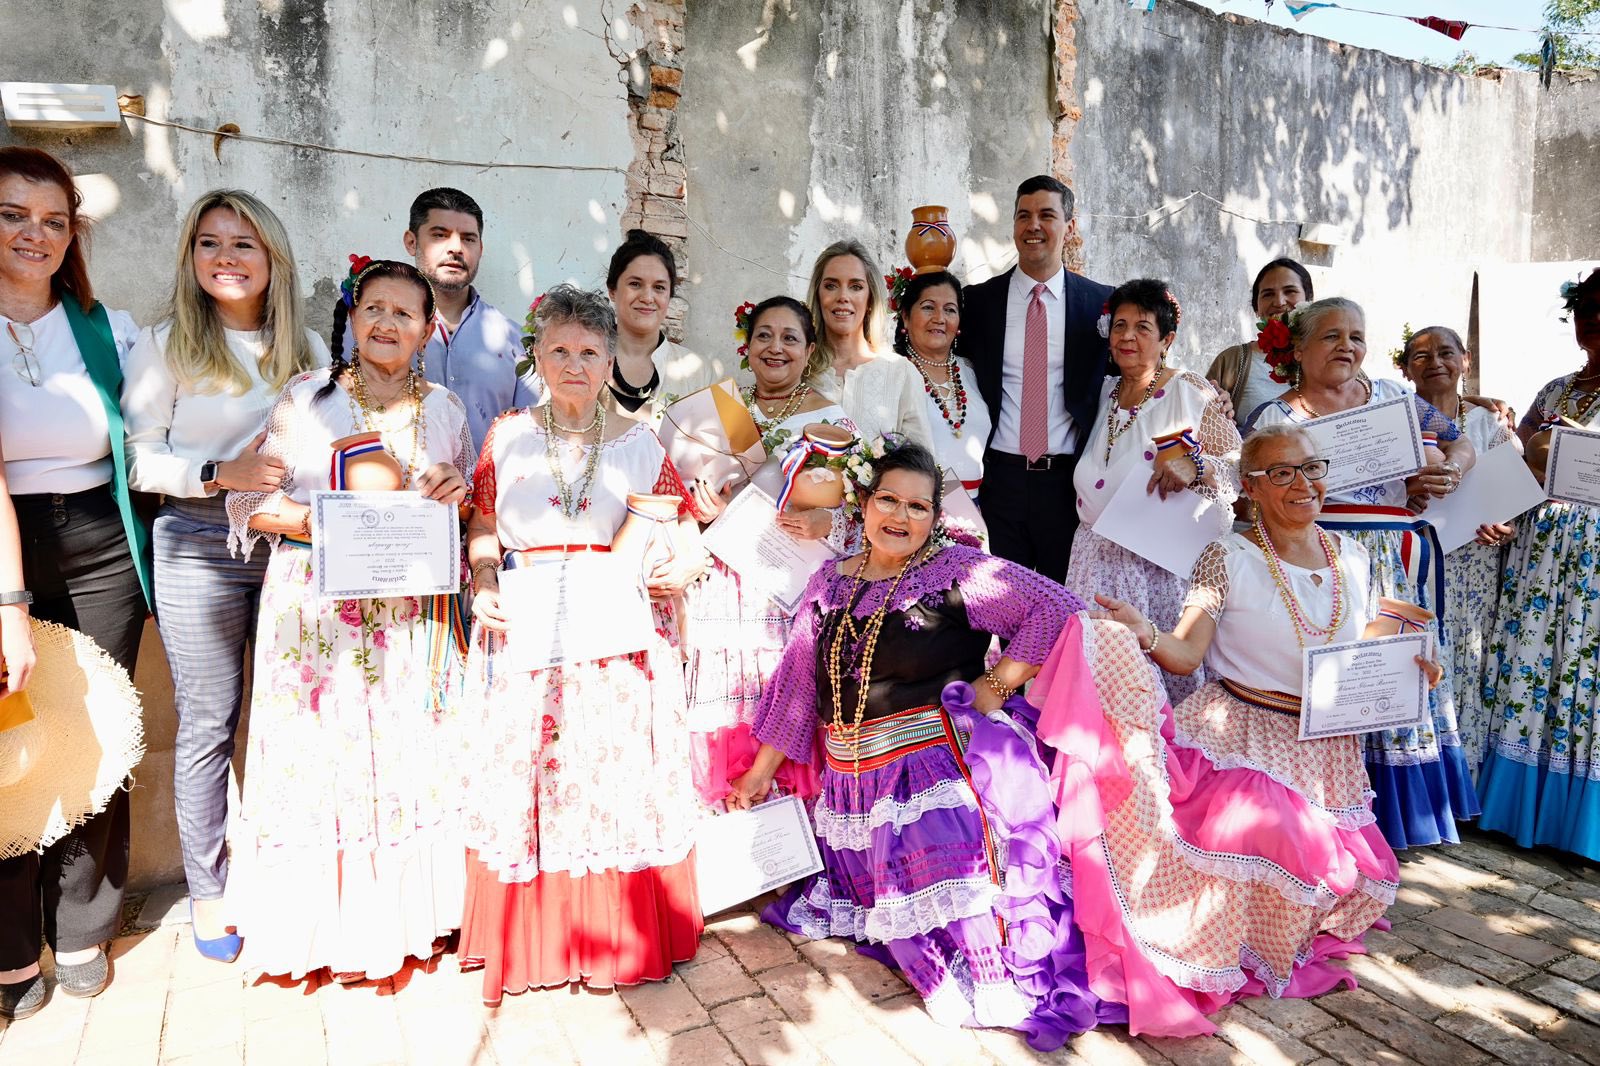 Presidente y primera dama homenajean al folklore paraguayo, en populoso barrio capitalino